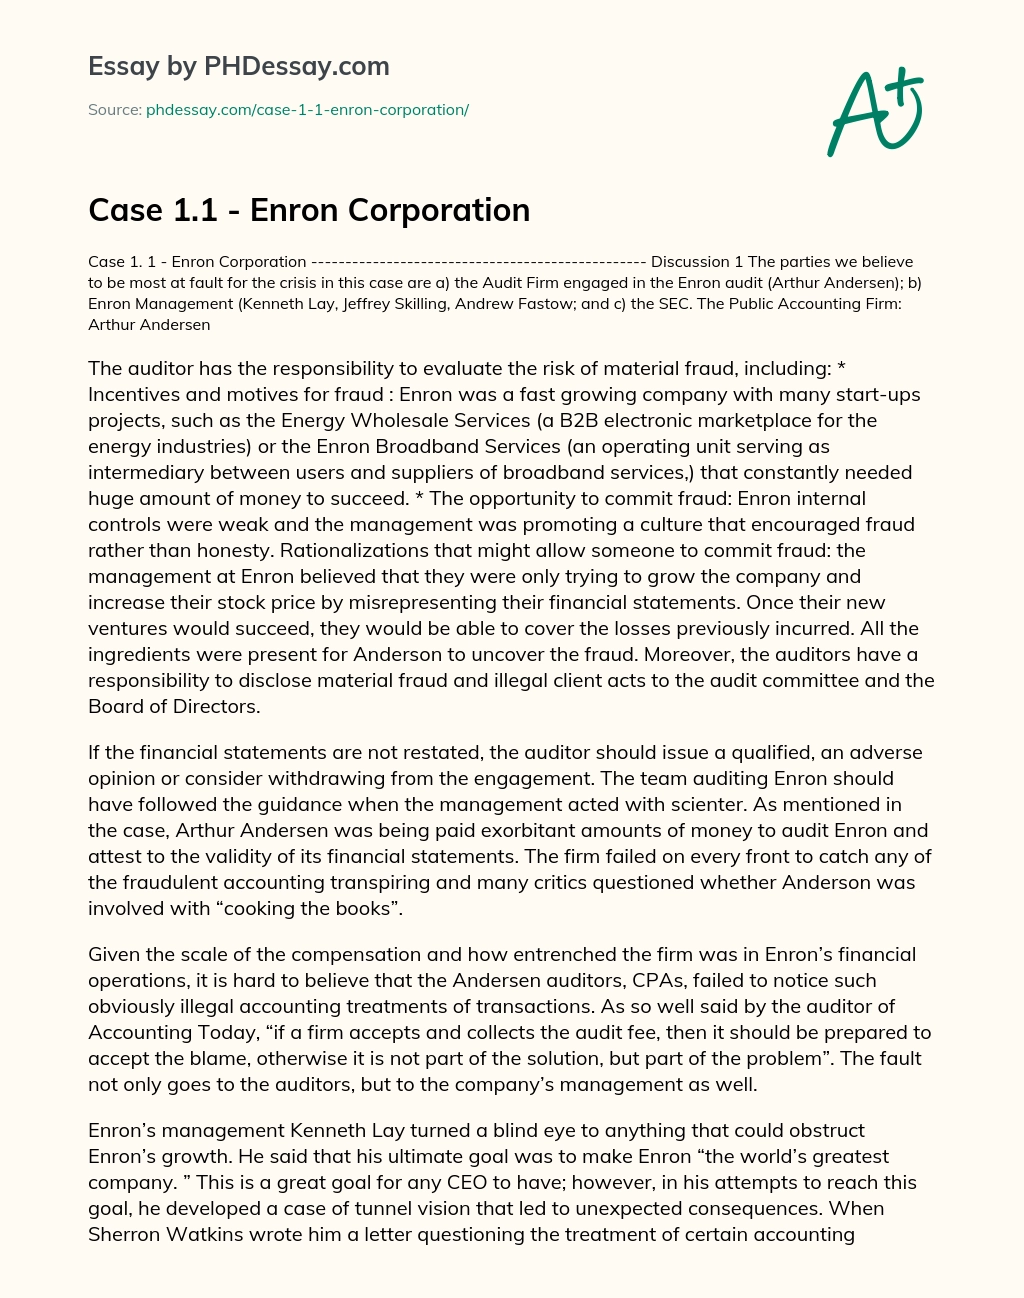 Case 1.1 – Enron Corporation essay